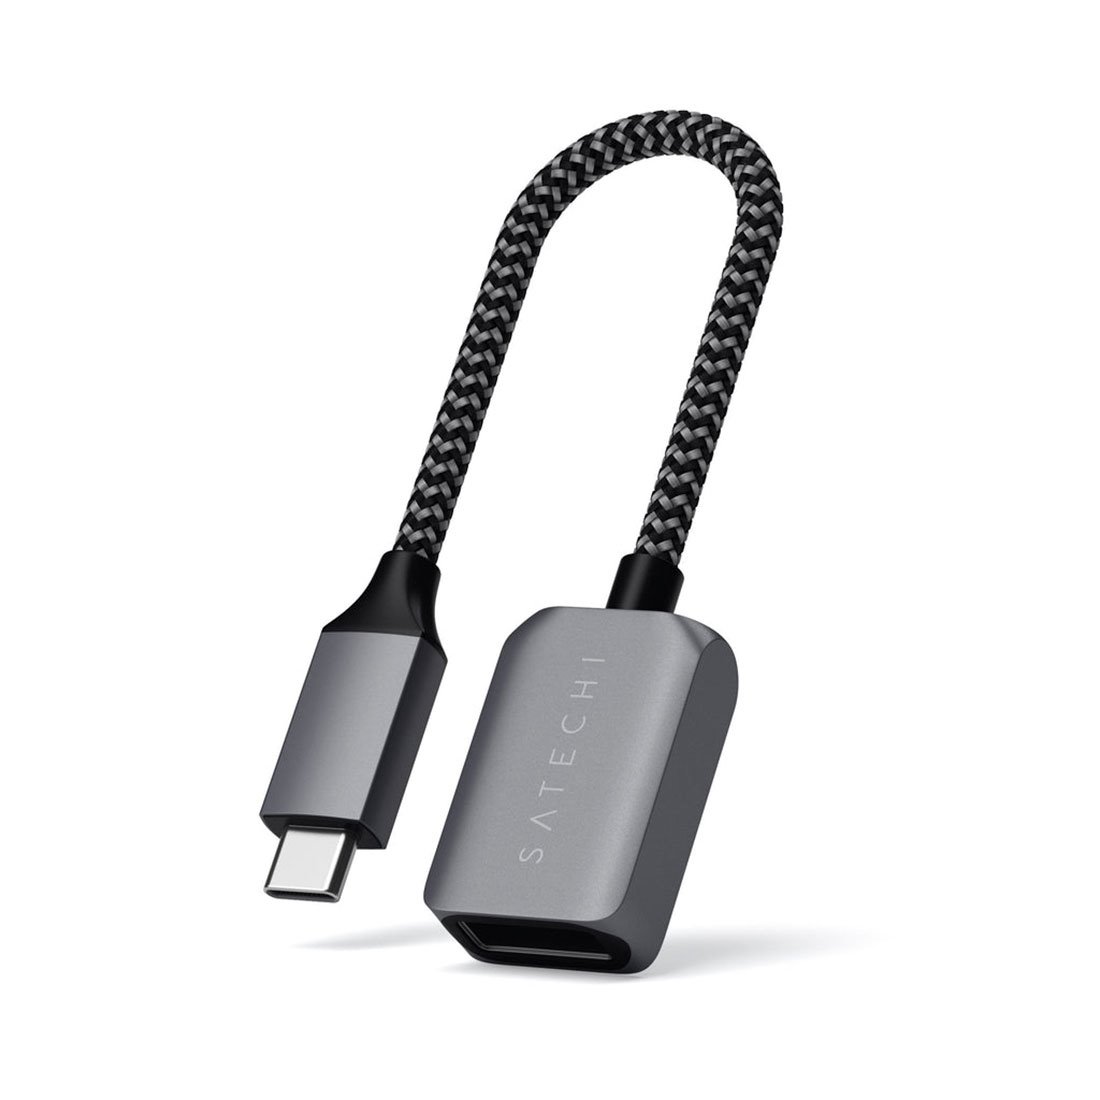 Satechi adaptér USB-C to USB 3.0 cable - Space Gray Aluminium